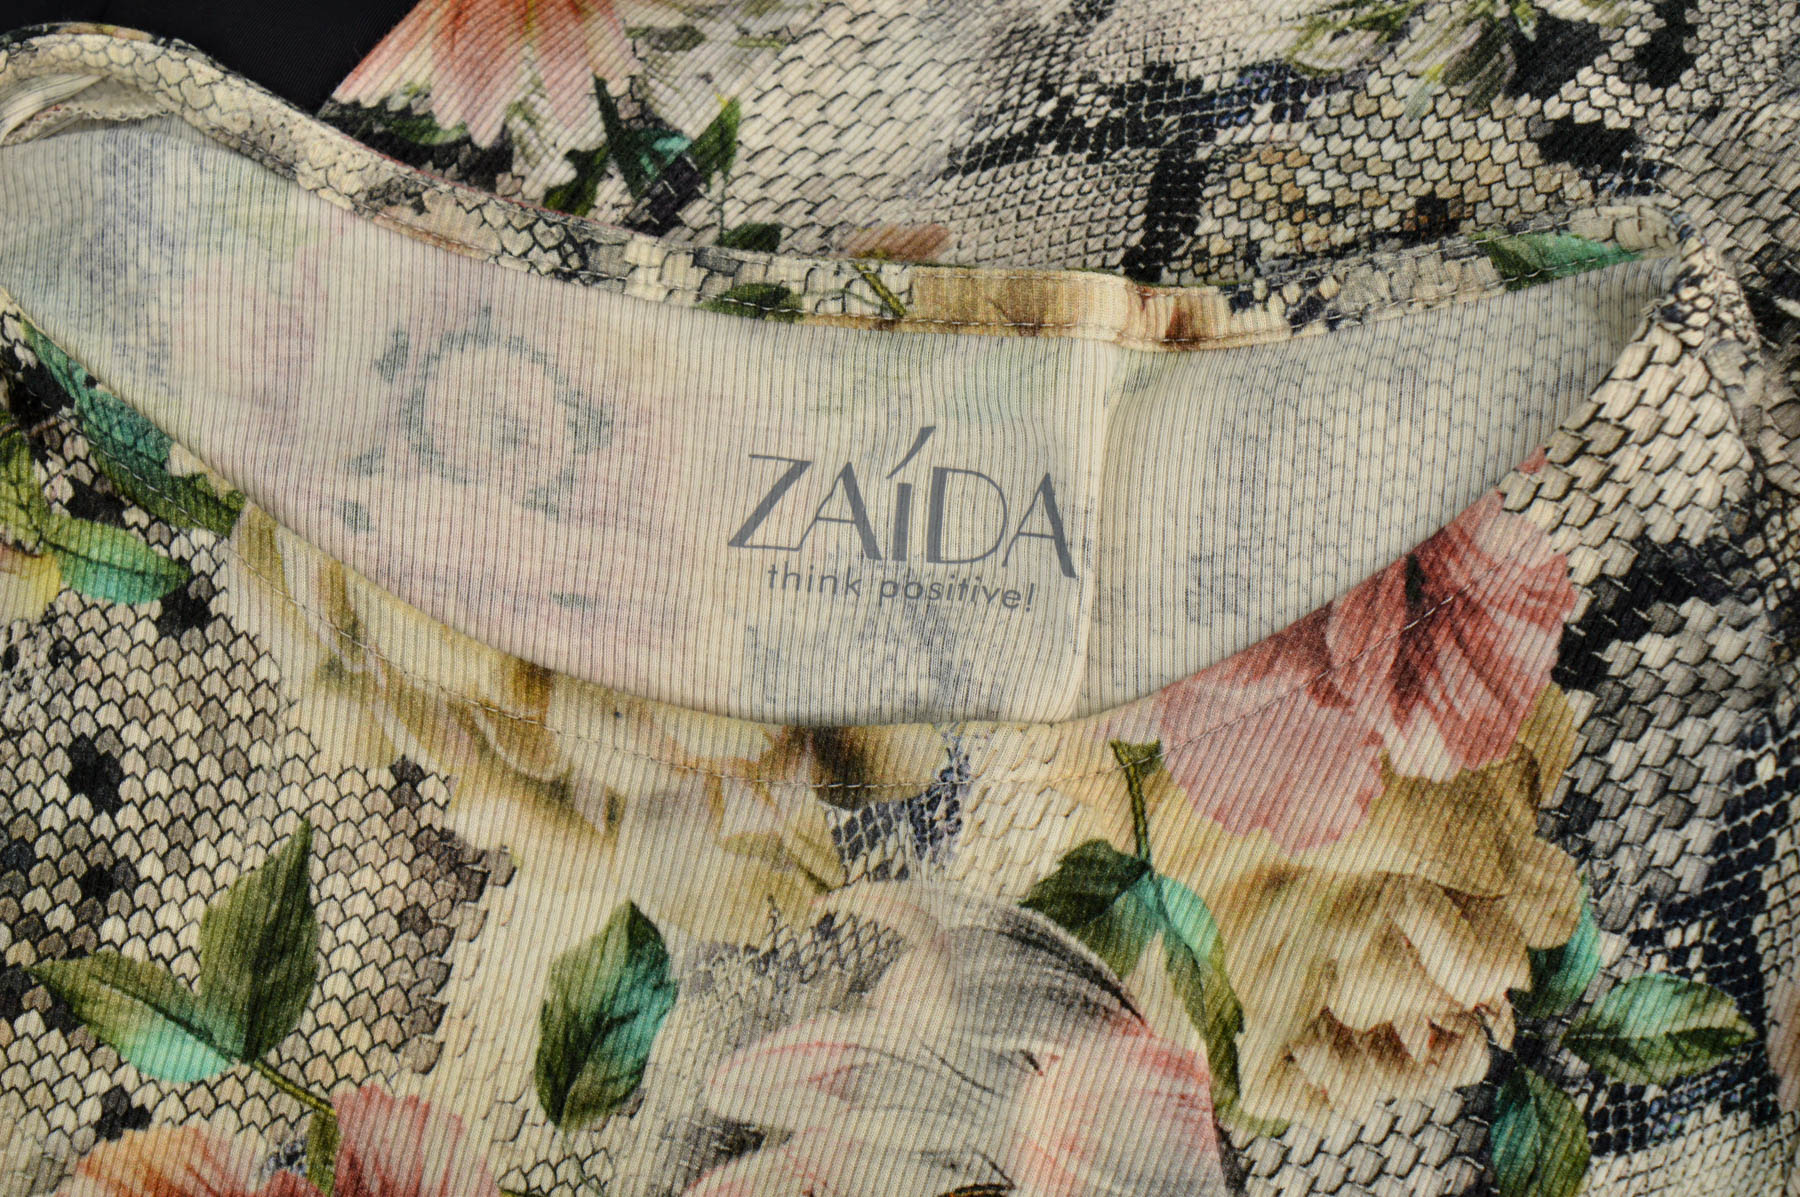 Bluza de damă - ZAIDA - 2